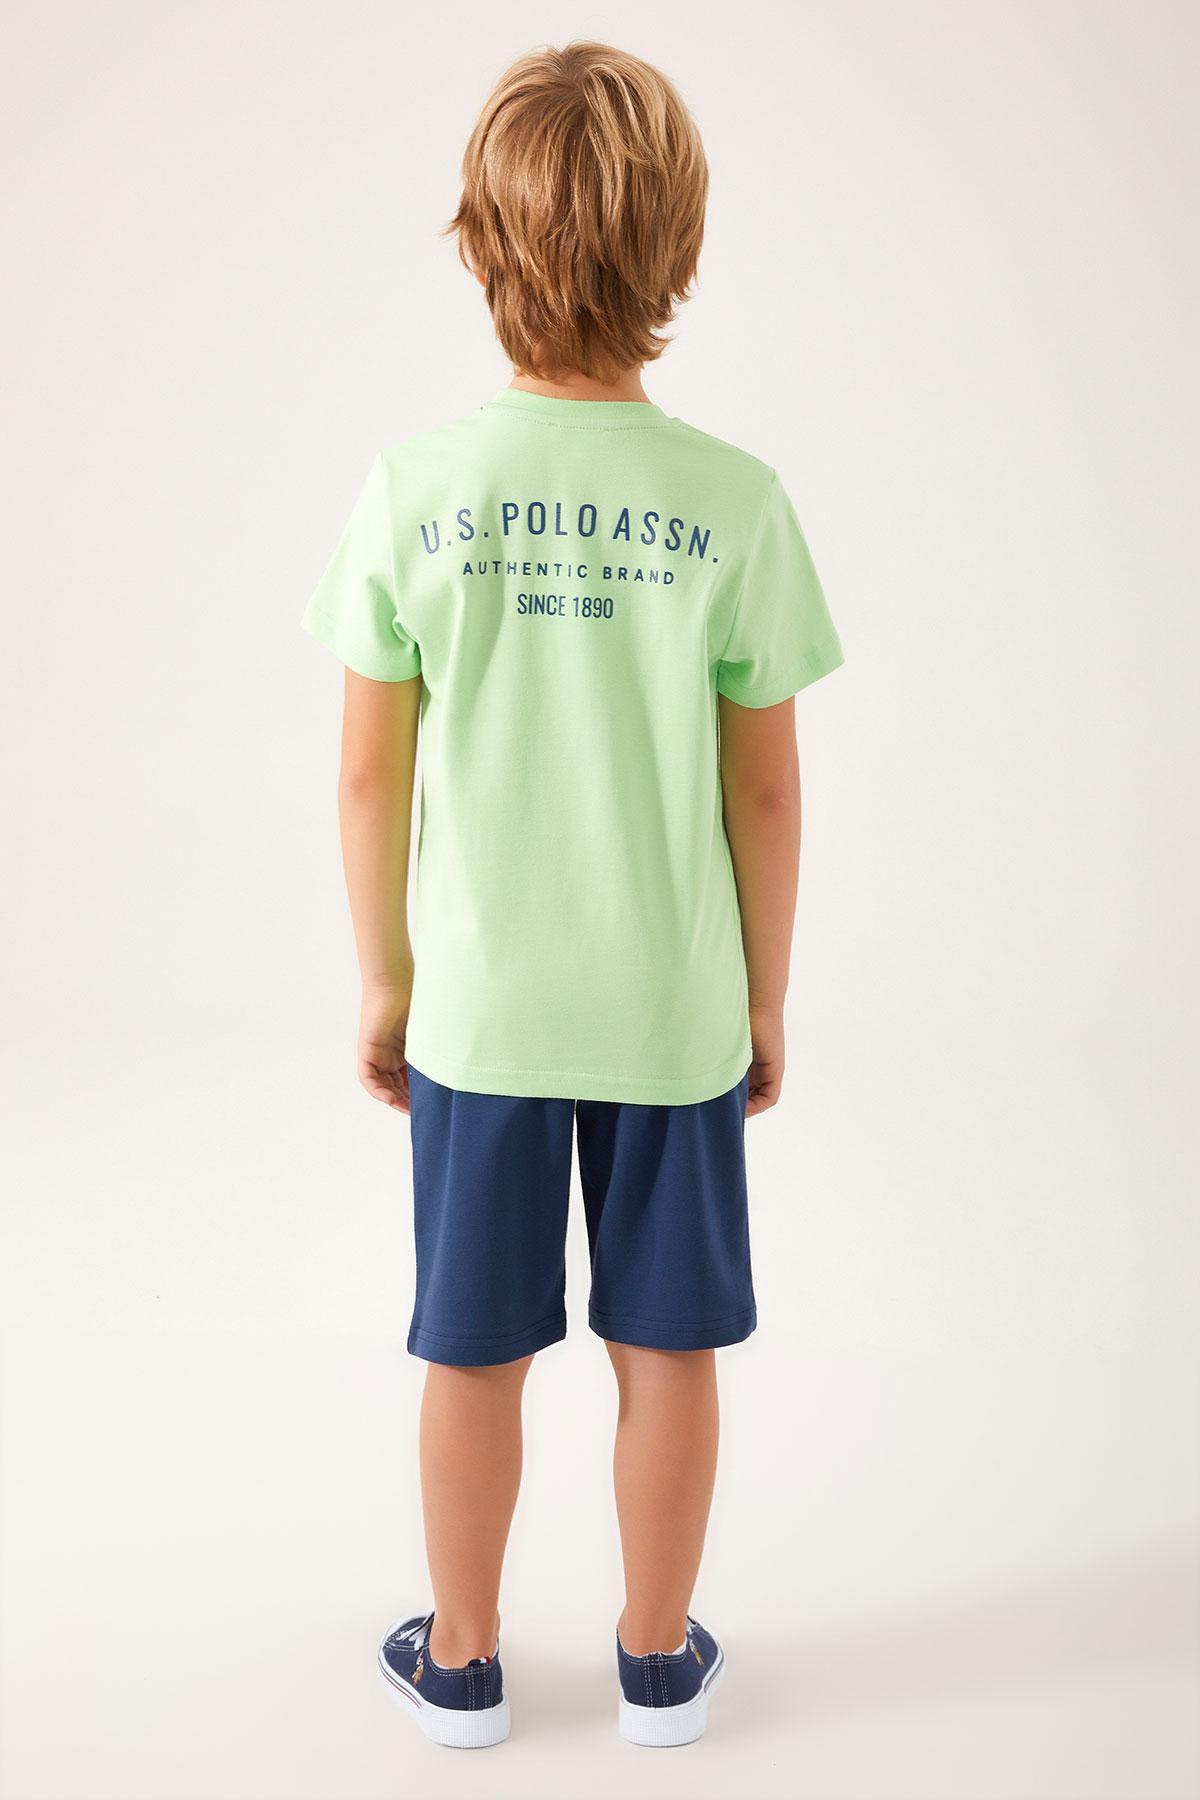 Selected image for U.S. POLO ASSN. Komplet šorc i majica za dečake US1332-G menta